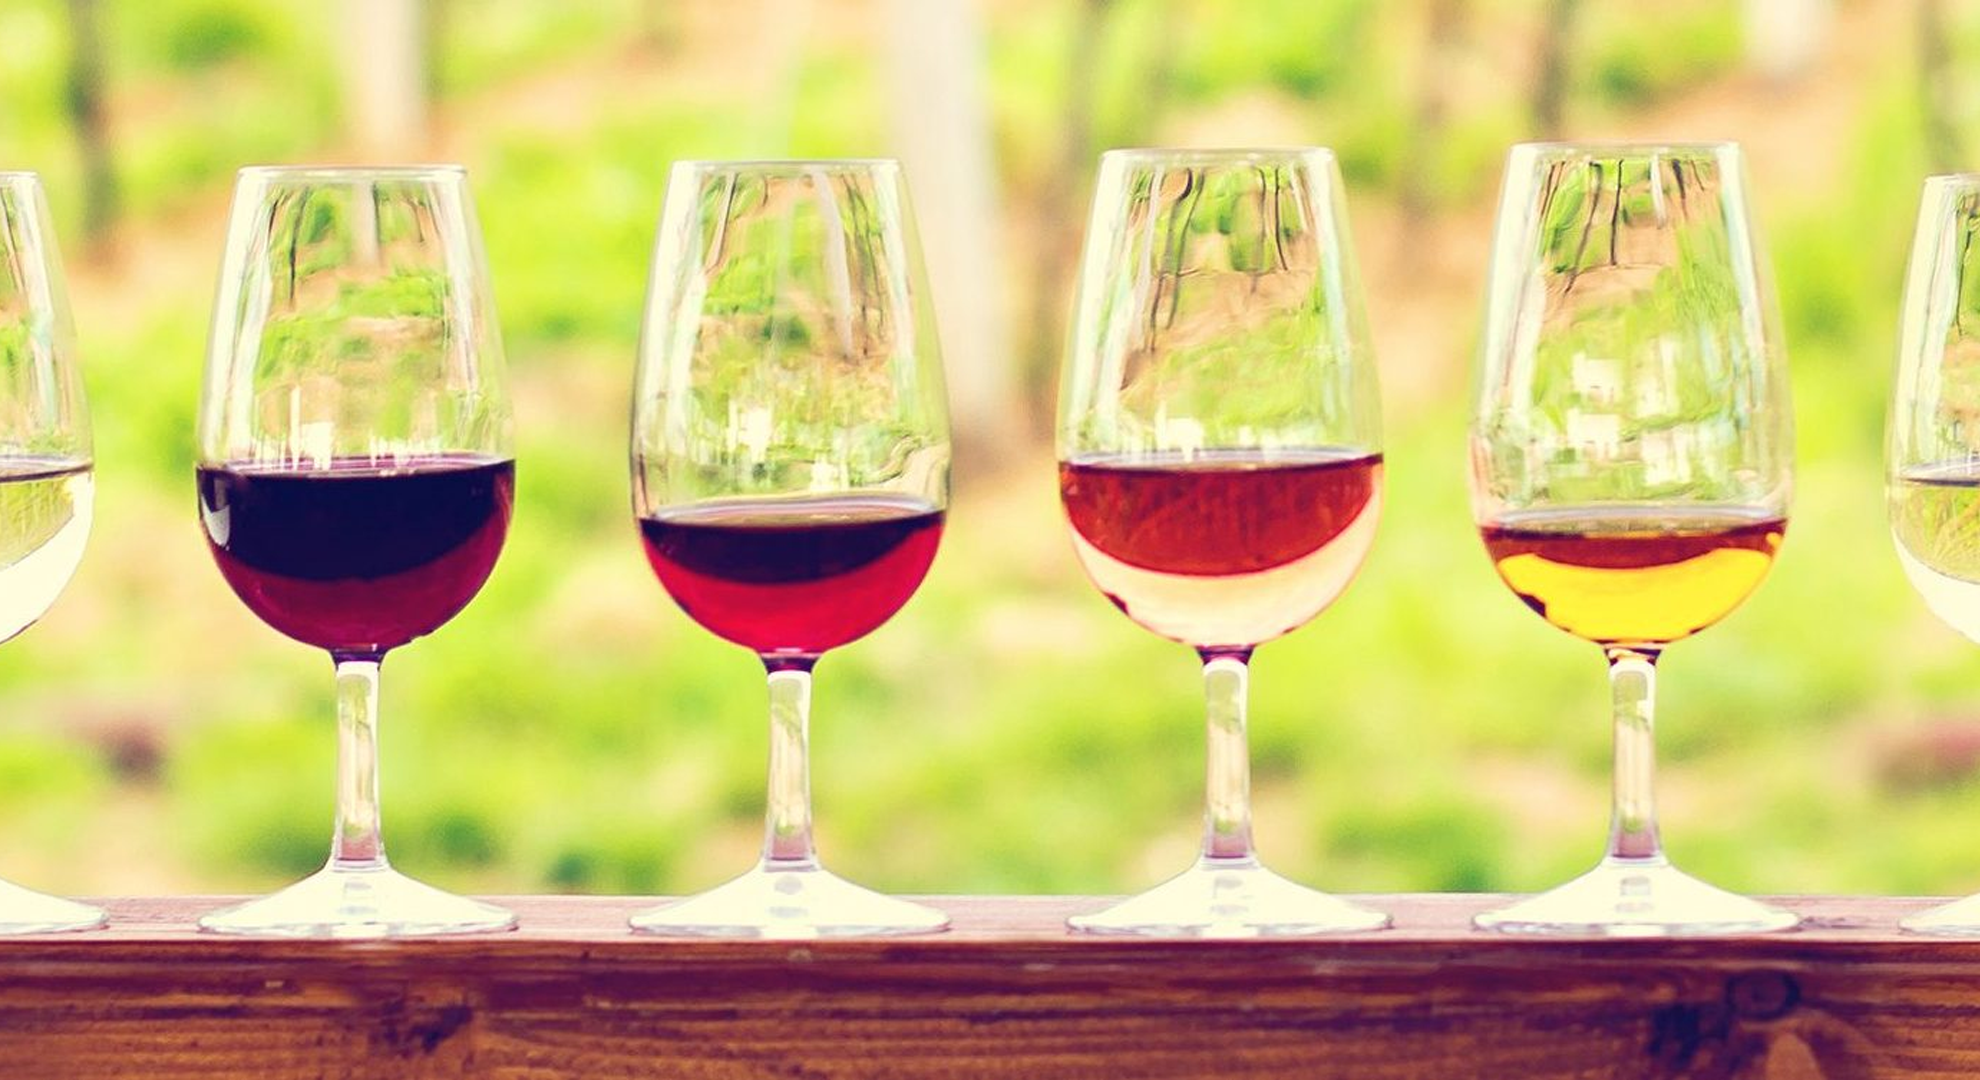 Des verres à vin contenant différents vins alignés les uns à côté des autres sur une table.